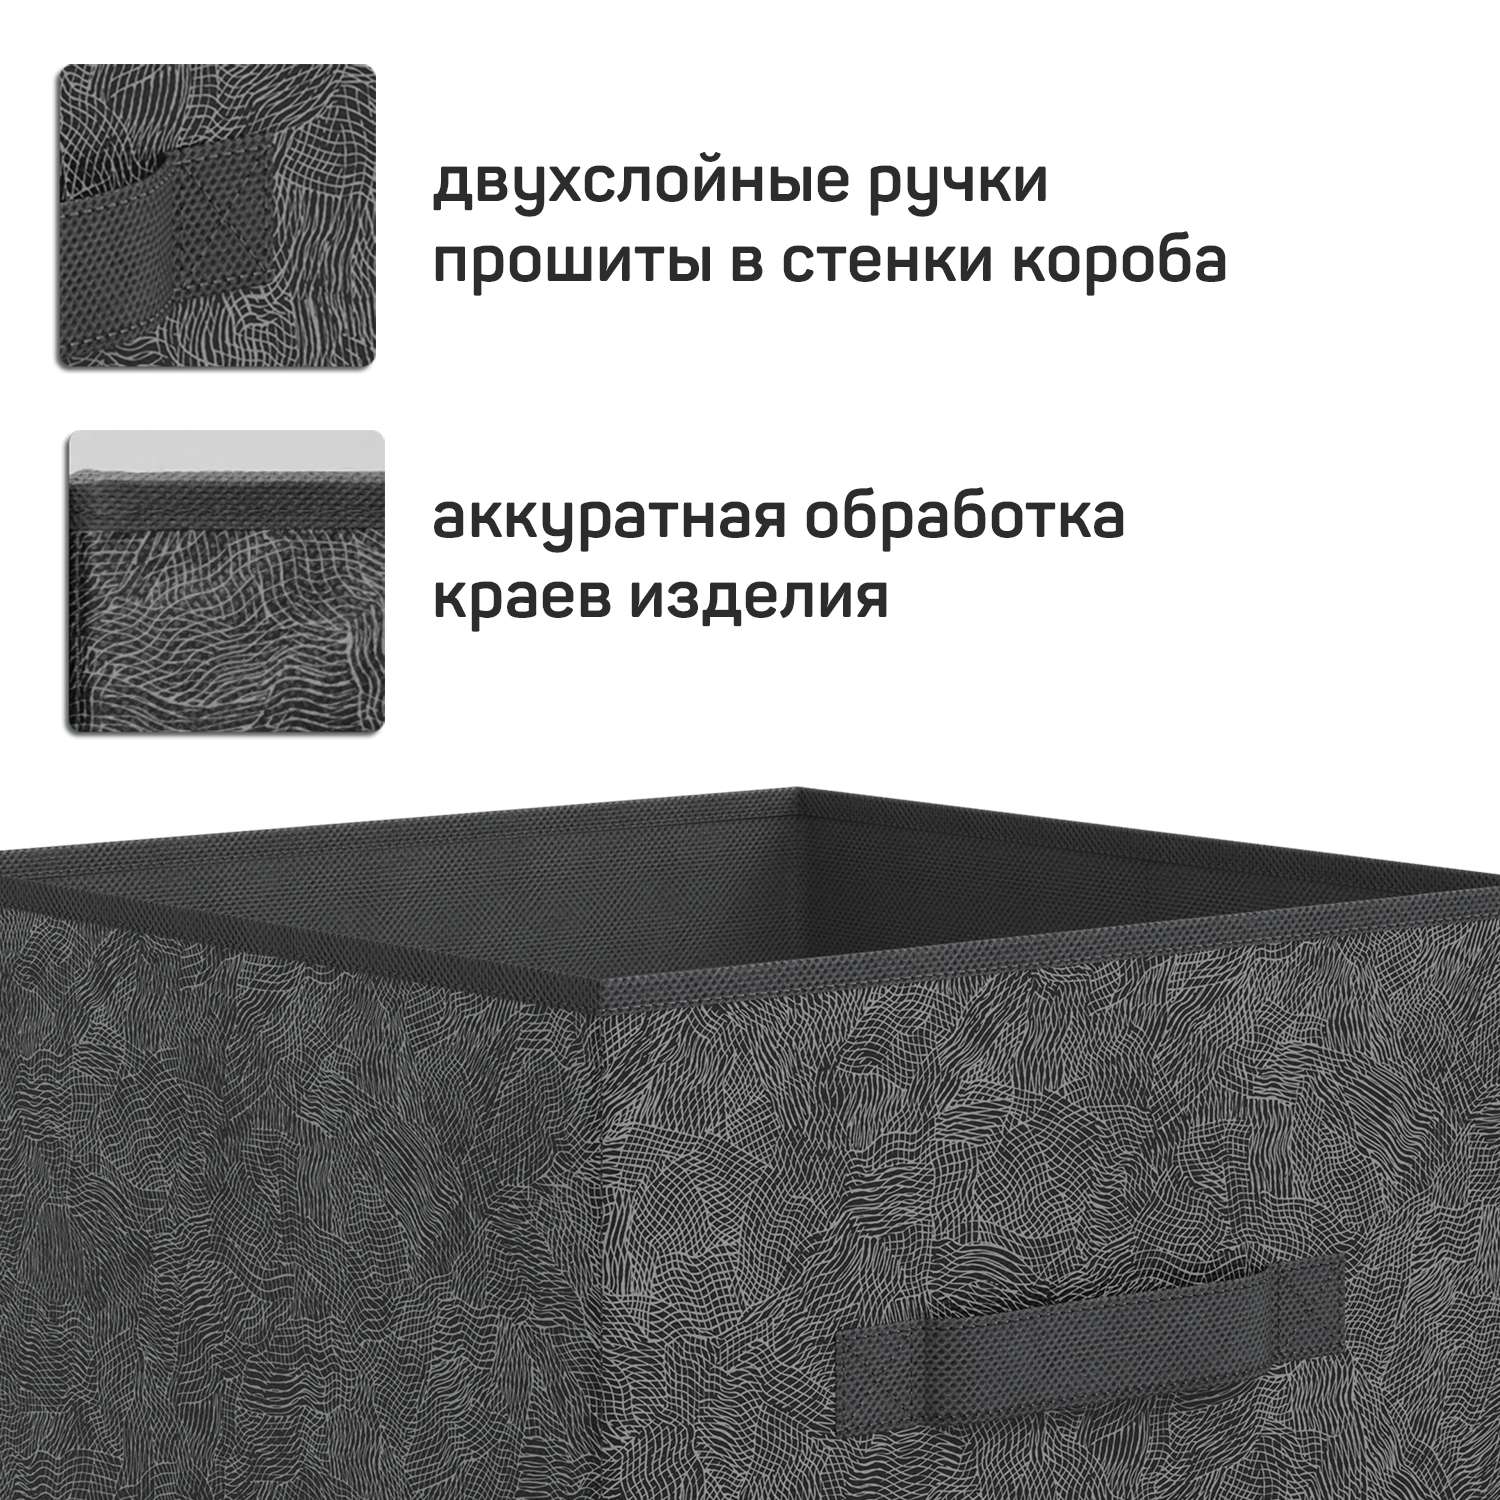 Короб стеллажный VALIANT без крышки 31*31*31 см набор 3 шт - фото 5